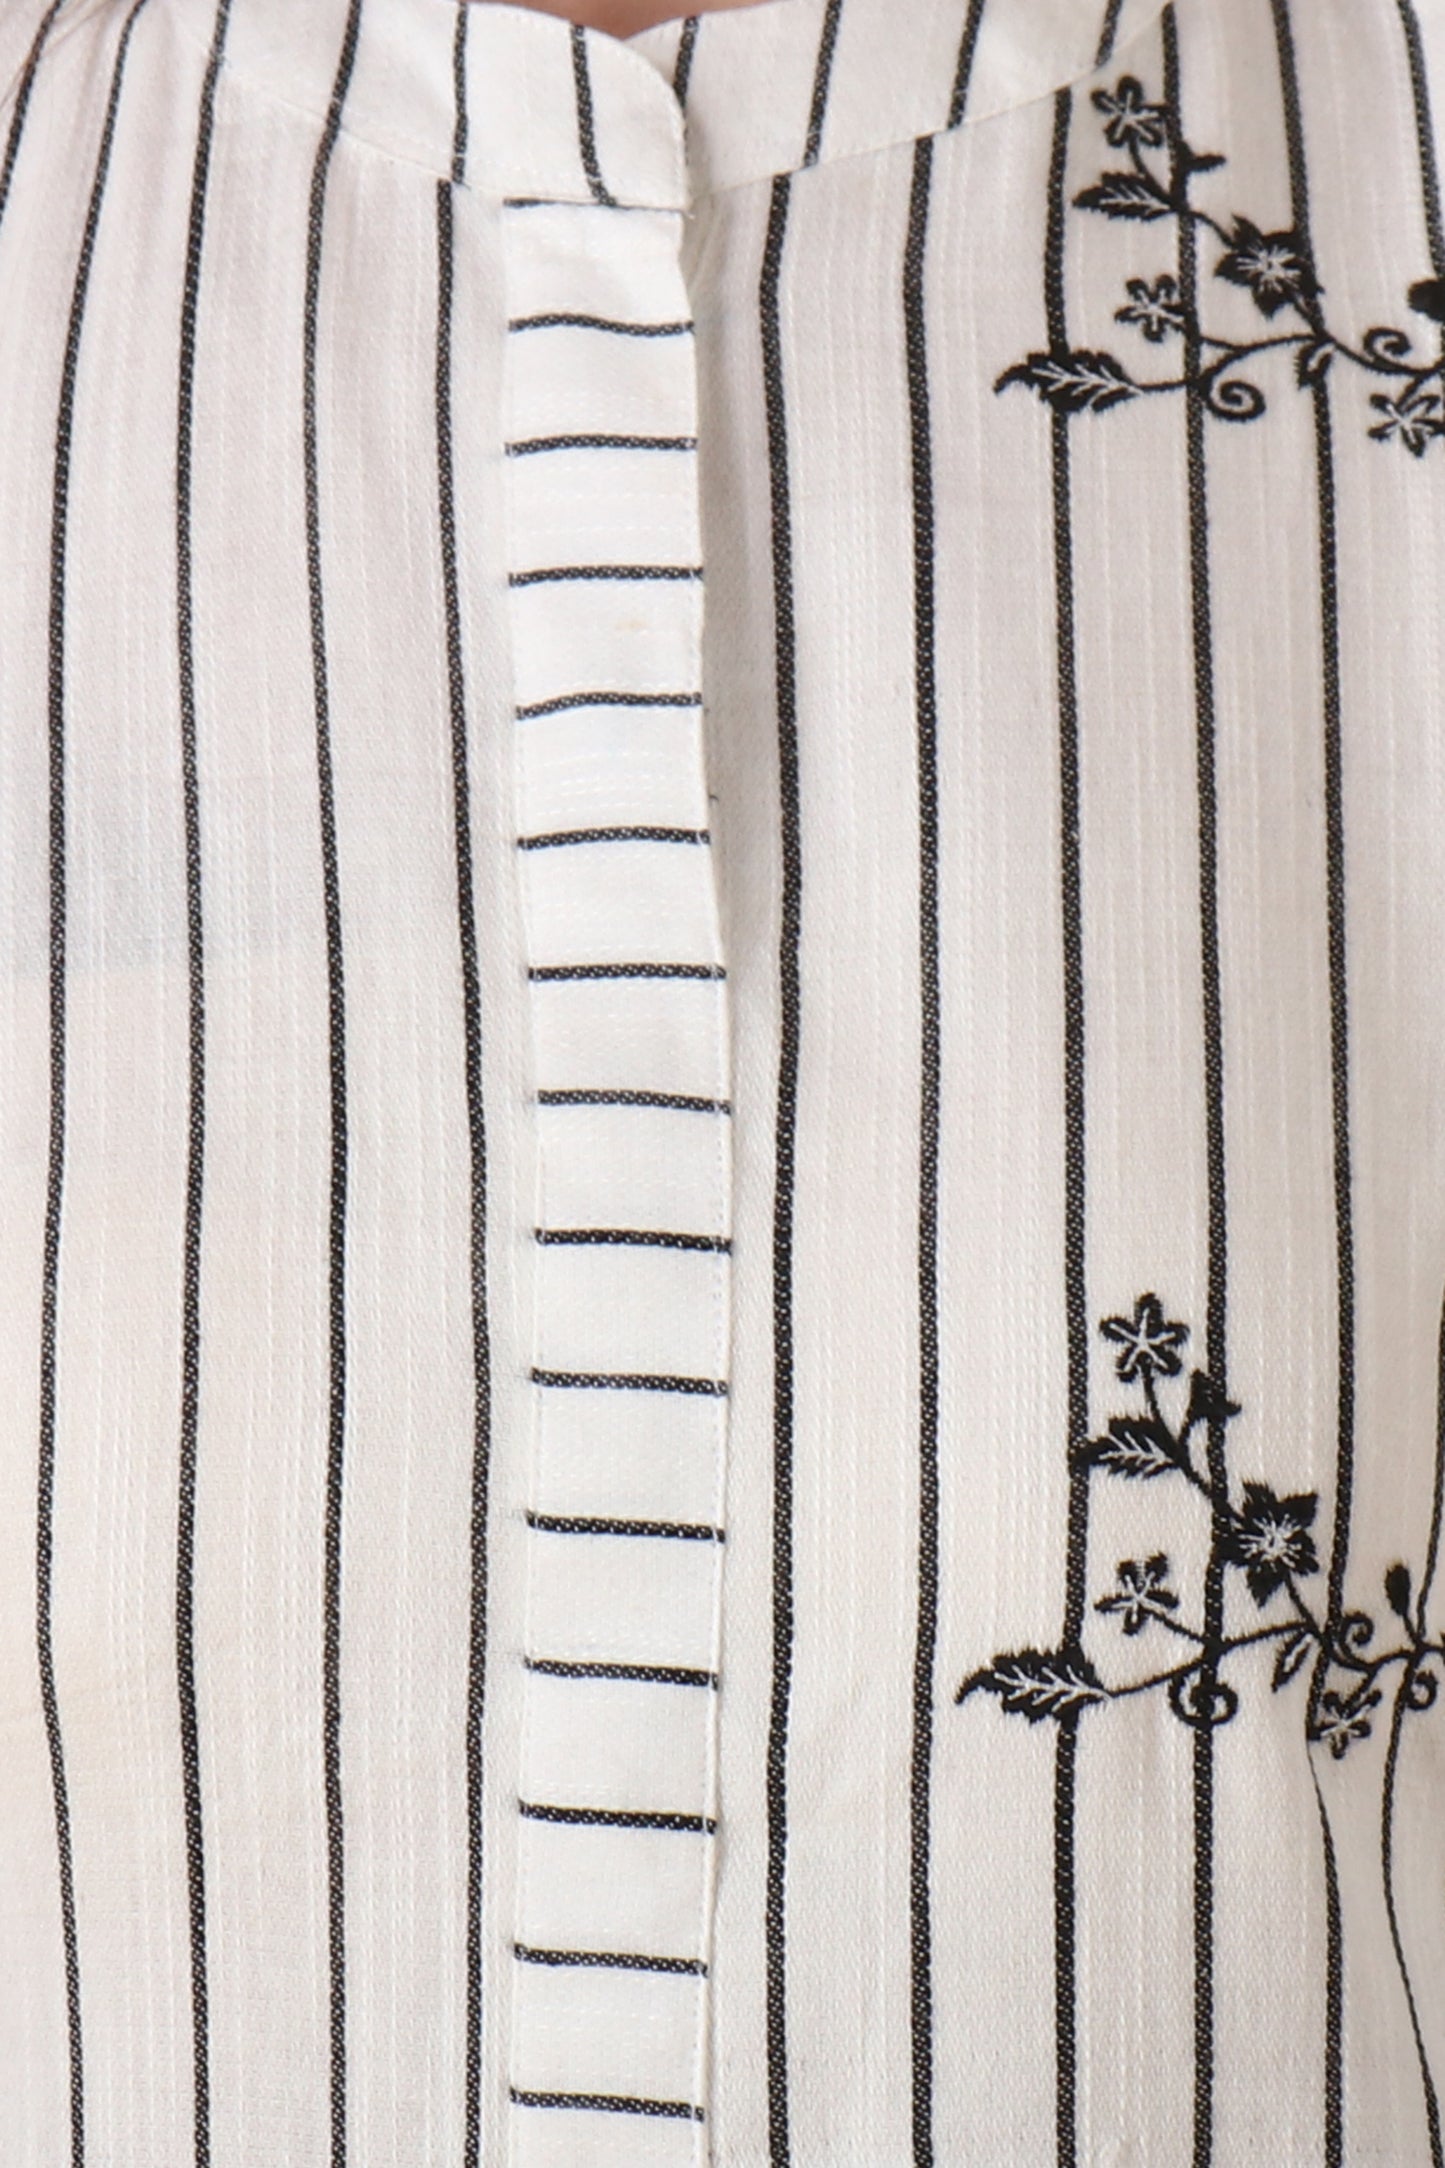 Women's Plus Size White Striped cotton kurti with palazzo set | Apella